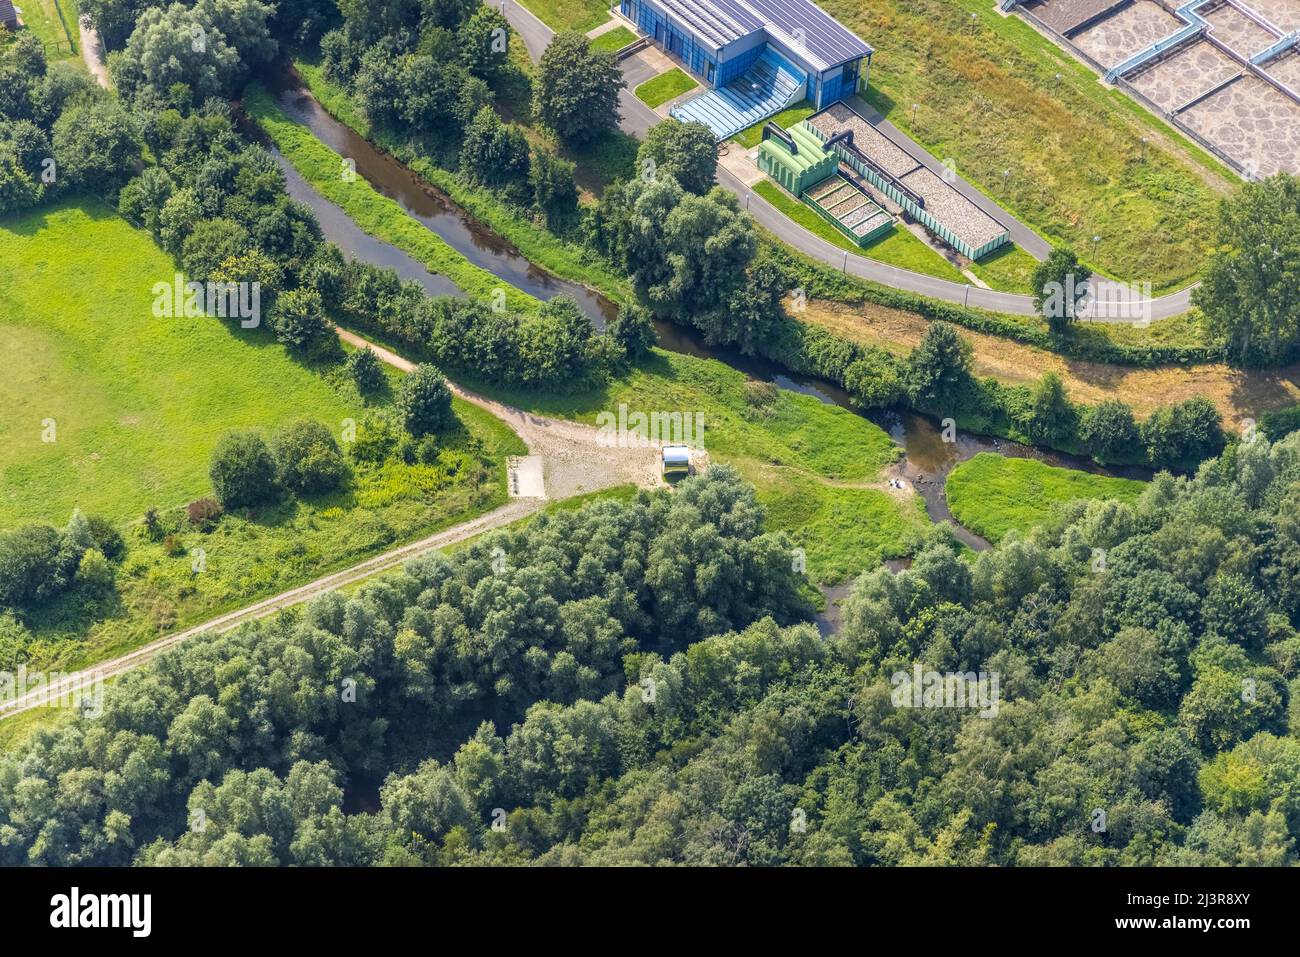 Vista aérea, planta de tratamiento de aguas residuales de Kamen-Körnebach en el distrito Westick de Kamen, región de Ruhr, Renania del Norte-Westfalia, Alemania, Luftbild, Sehenswü Foto de stock